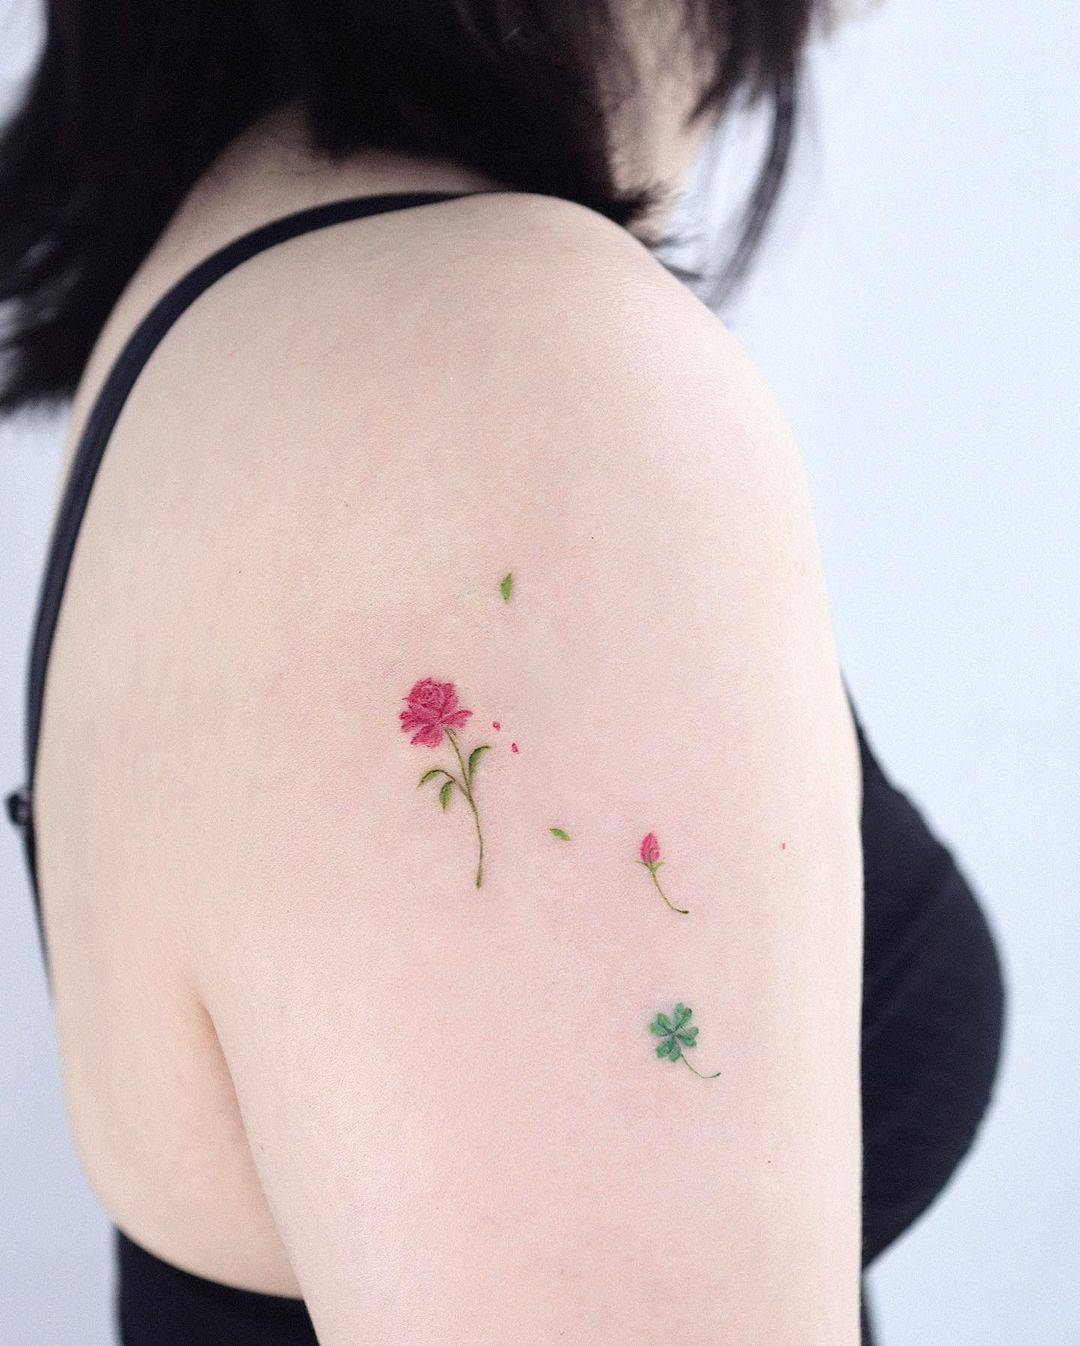 Rose tattooby aol.tattoo